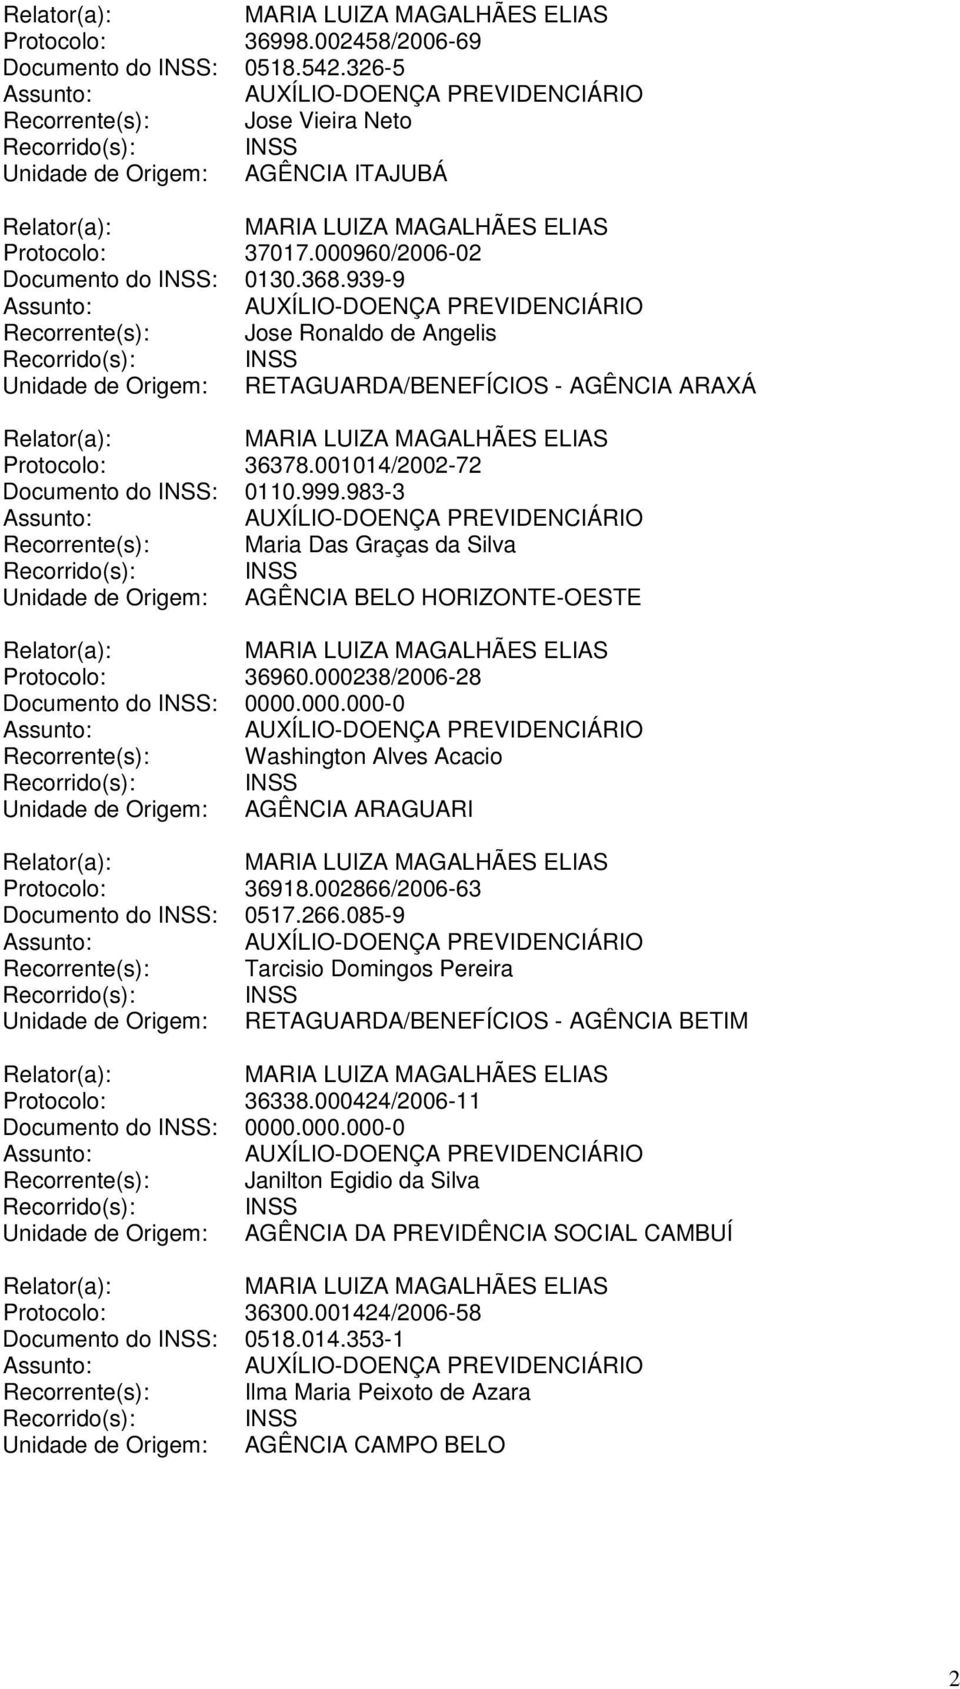 983-3 Recorrente(s): Maria Das Graças da Silva Unidade de Origem: AGÊNCIA BELO HORIZONTE-OESTE Protocolo: 36960.0002